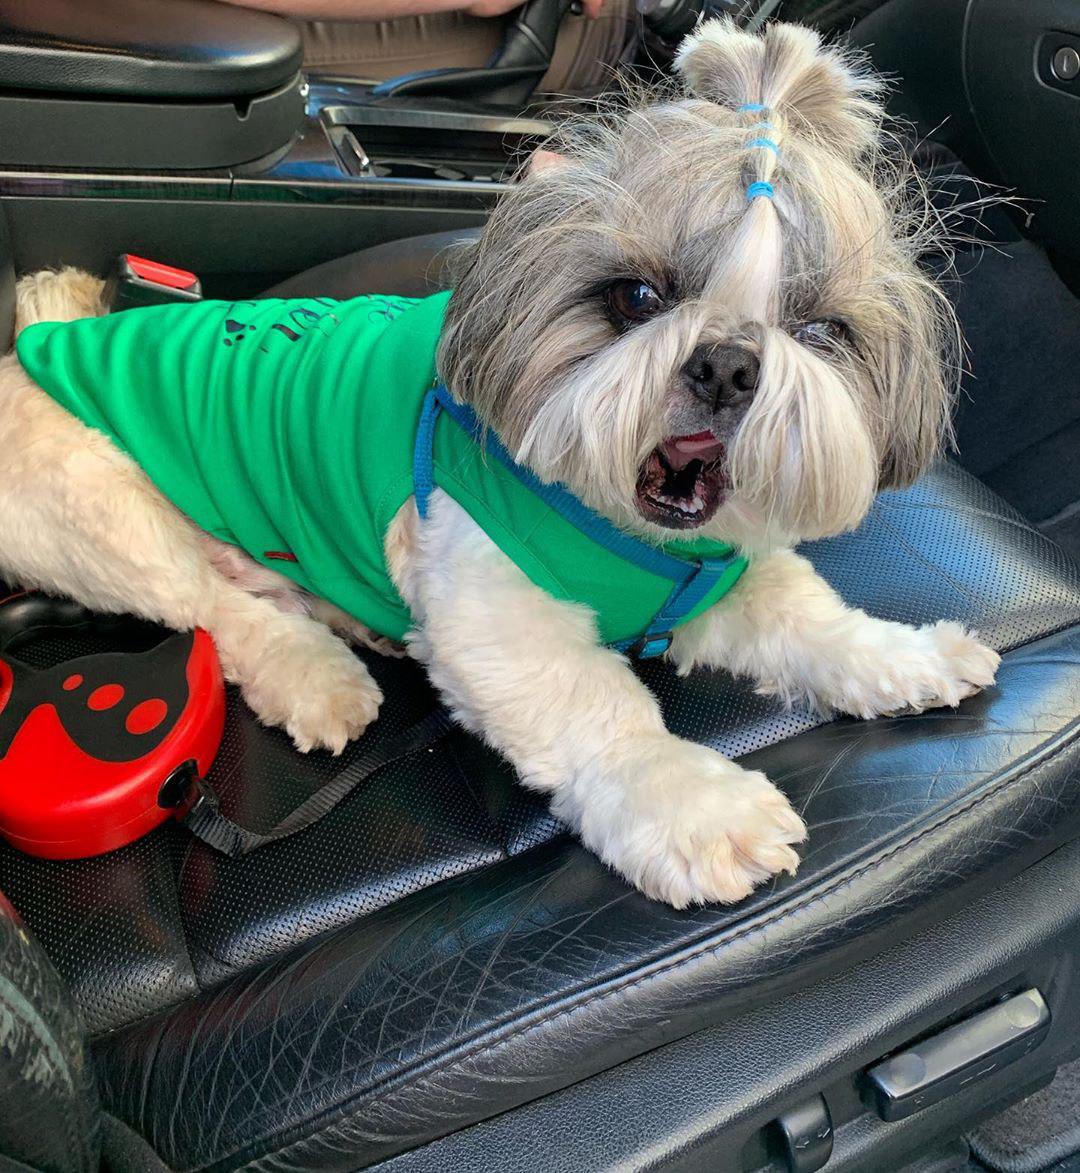 Shih Tzu wearing a green shirt yawning while lying in a car seat